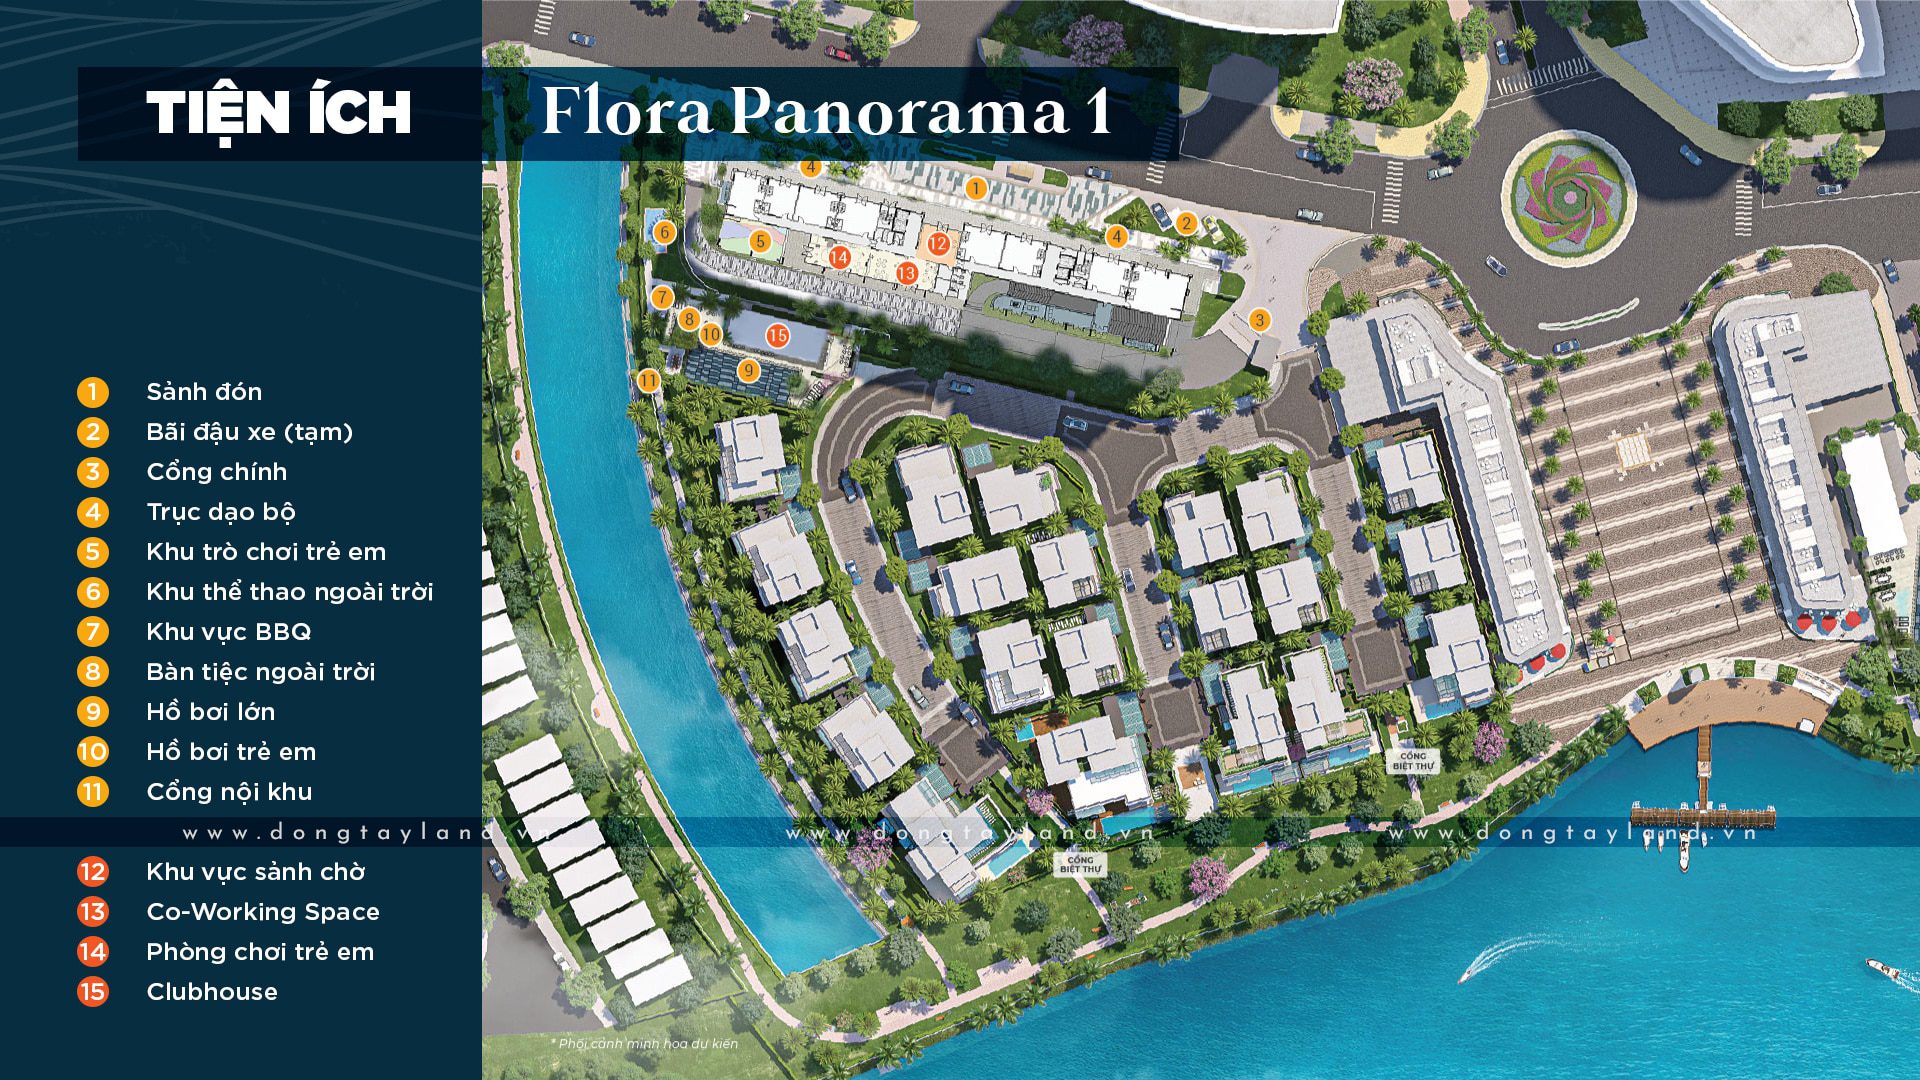 Tiện ích nội khu Flora Panorama 1